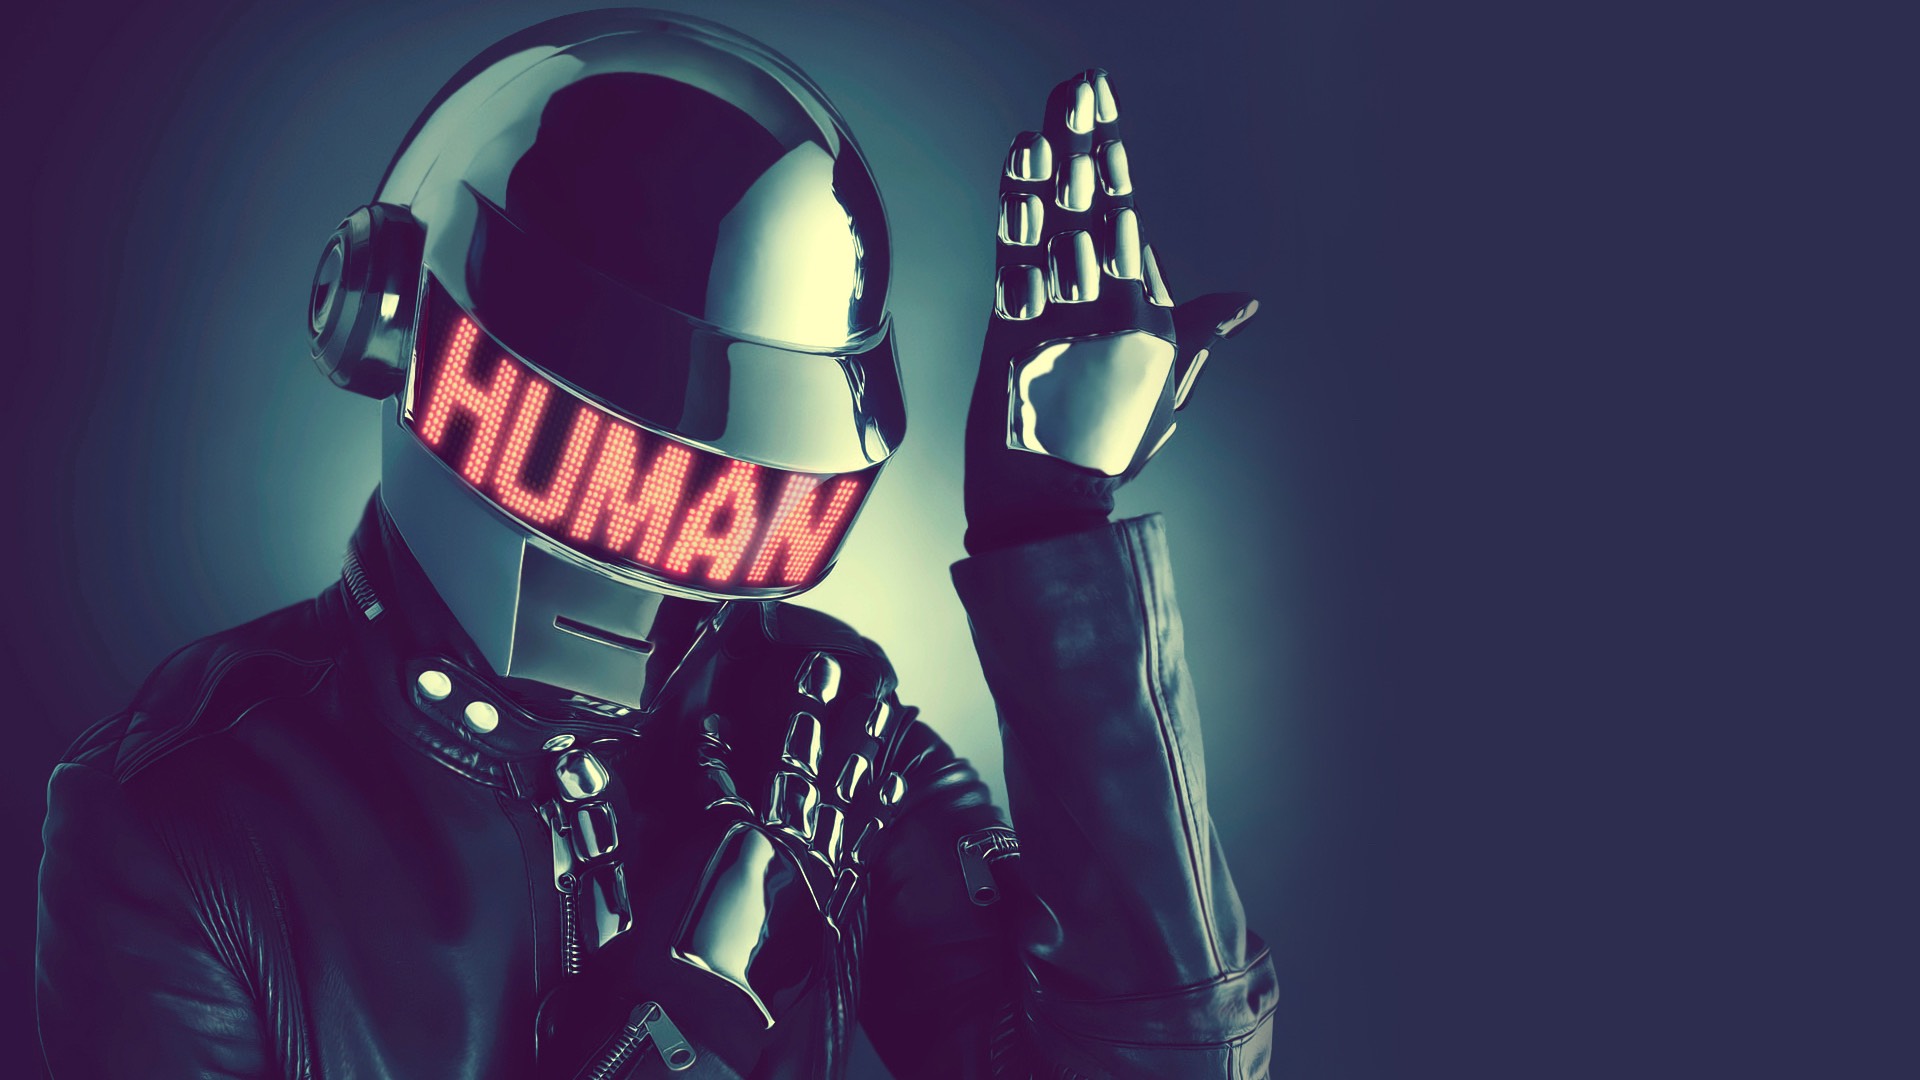 Thomas Bangalter de Daft Punk presenta su nuevo proyecto